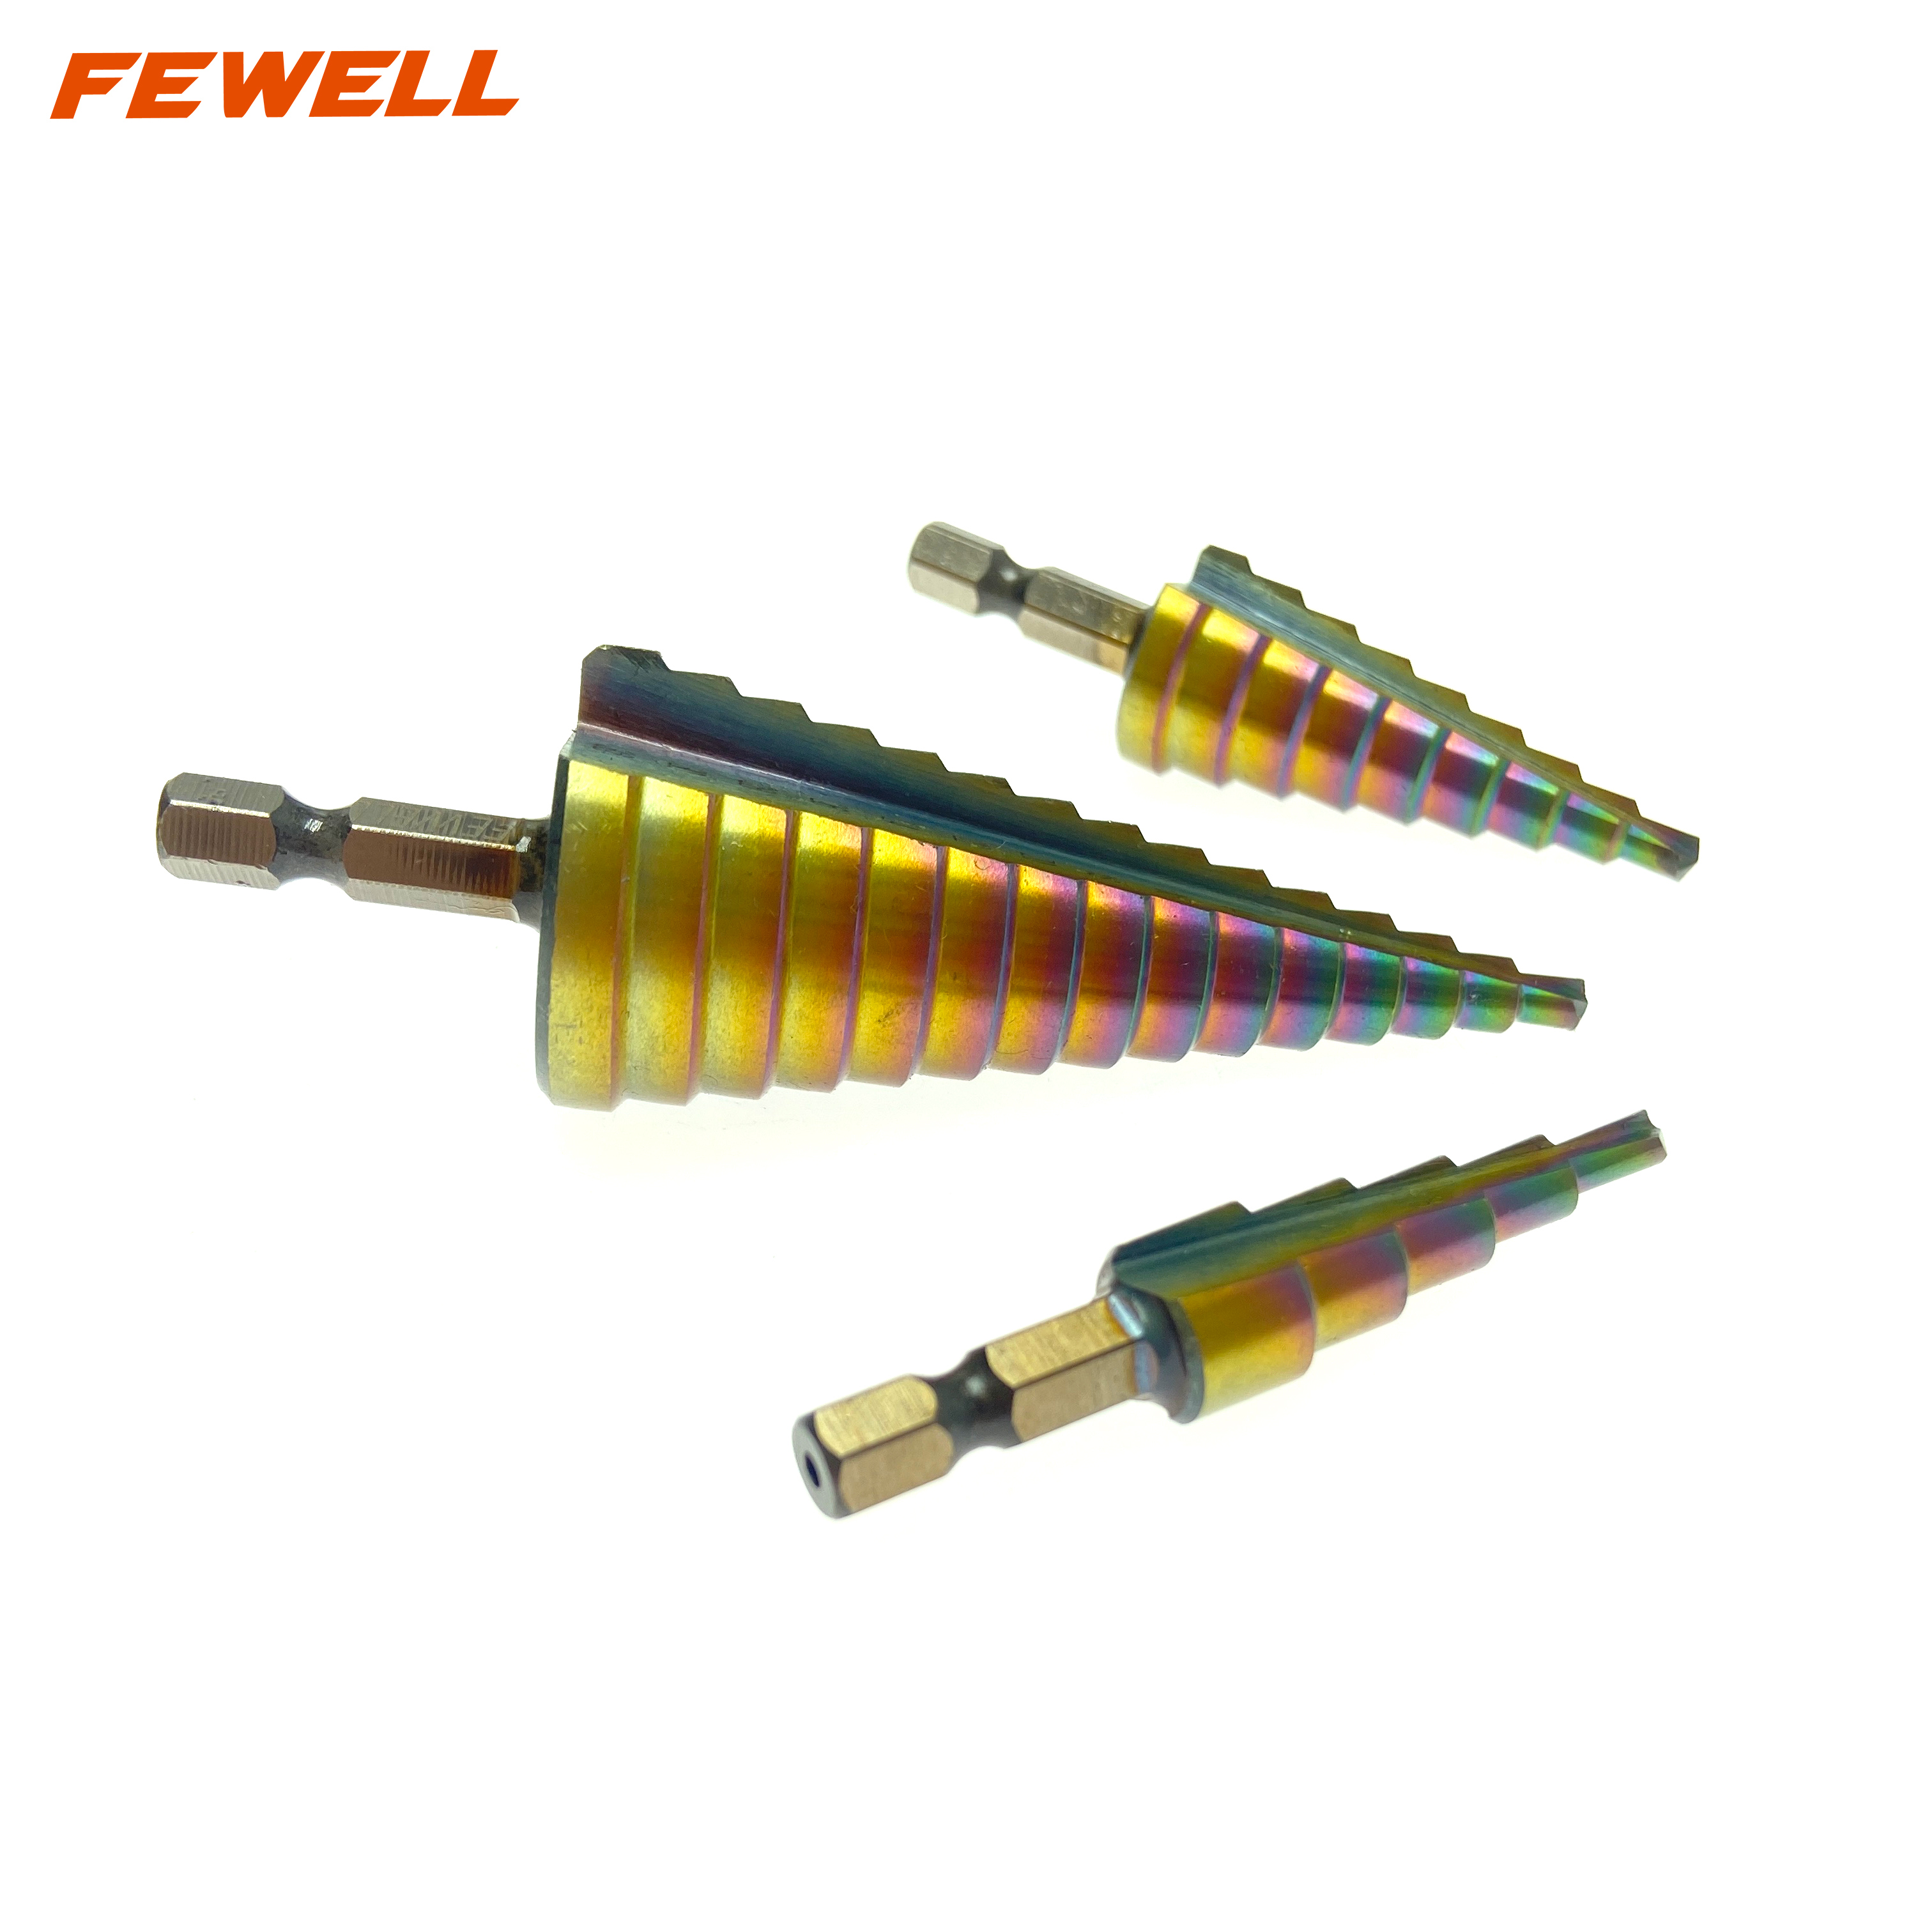 3 uds 4-12mm 4-20mm 4-32mm HSS 6542 vástago hexagonal herramientas eléctricas flauta espiral brocas escalonadas de titanio para perforación de Metal